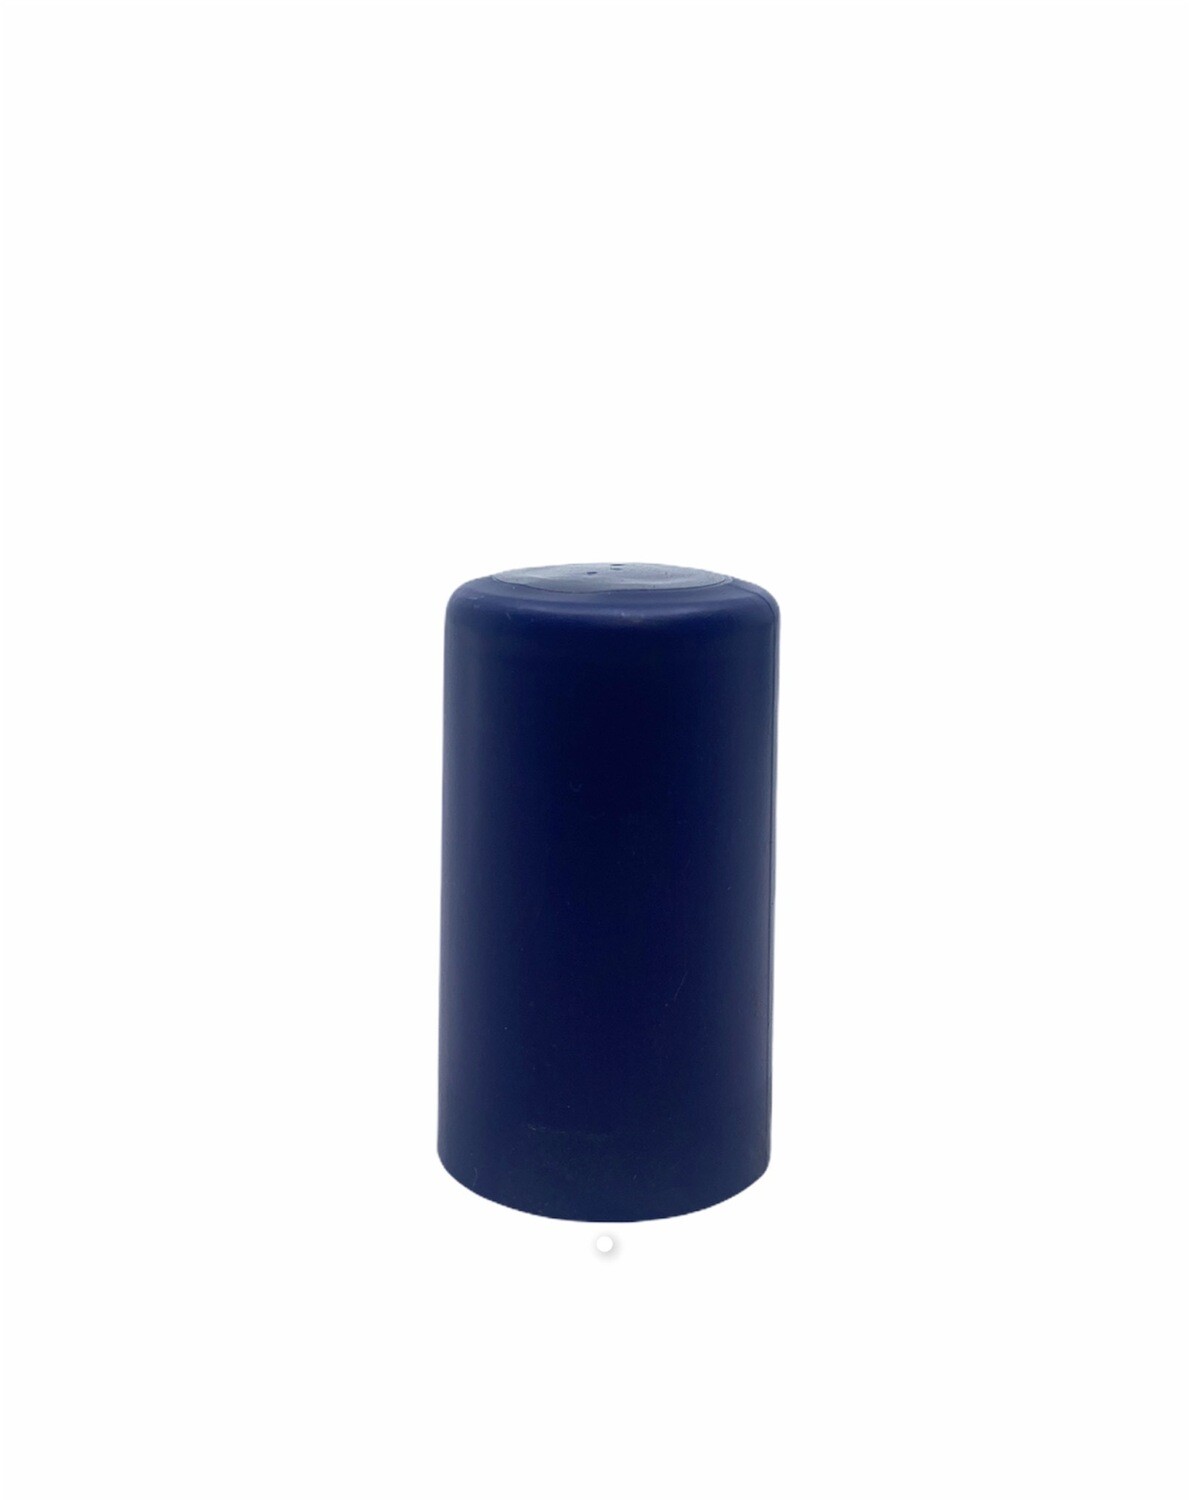 PVC Seal, Blue